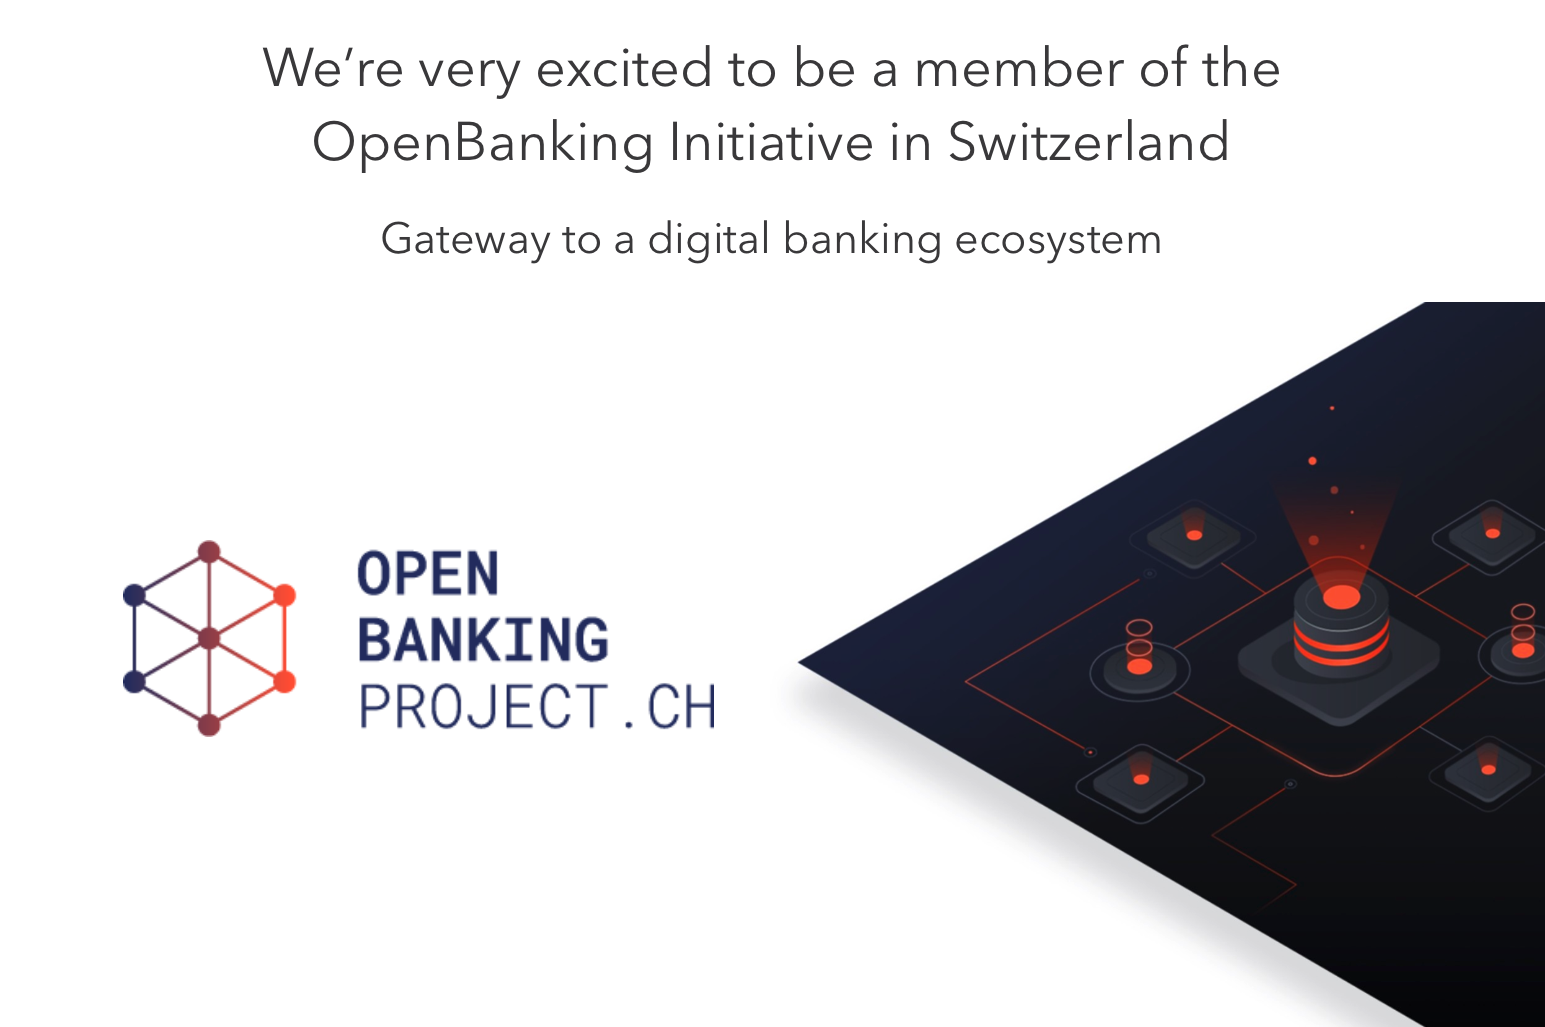 KYC Spider-OpenBanking Initiative Switzerland-OpenBankingProject-Member-Okt 2021